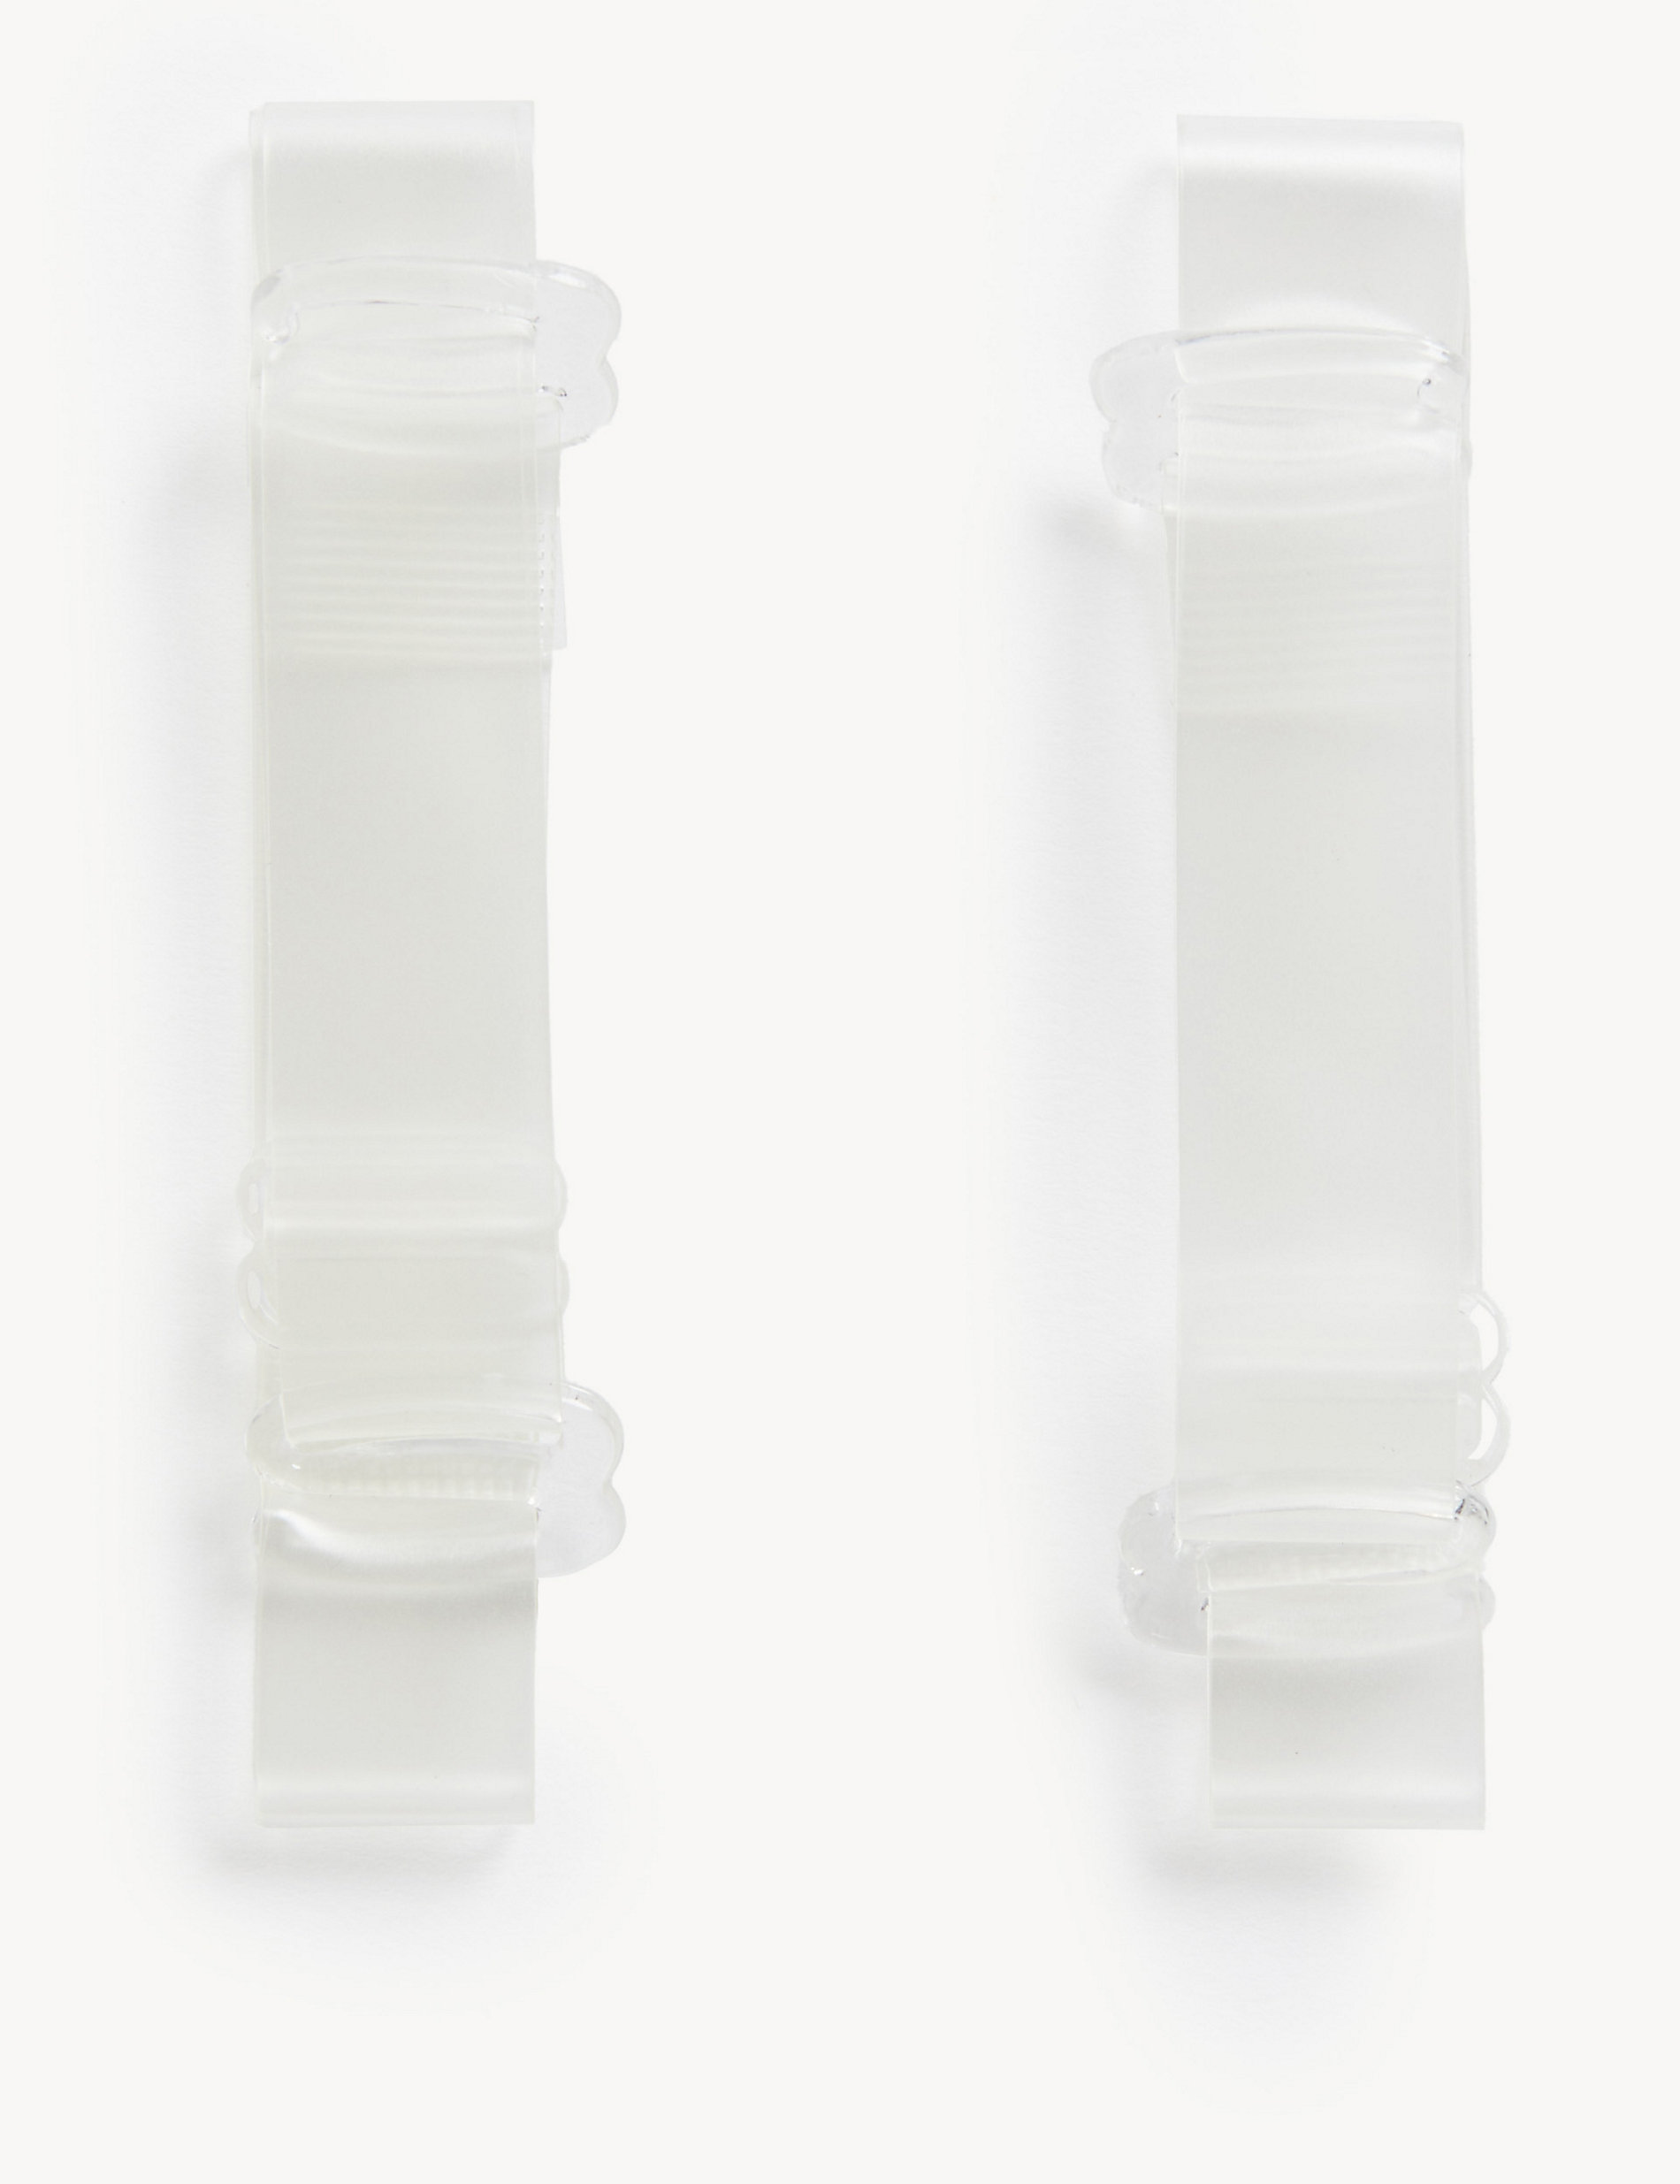 Tirantes transparentes extraíbles de sujetador - Más anchos